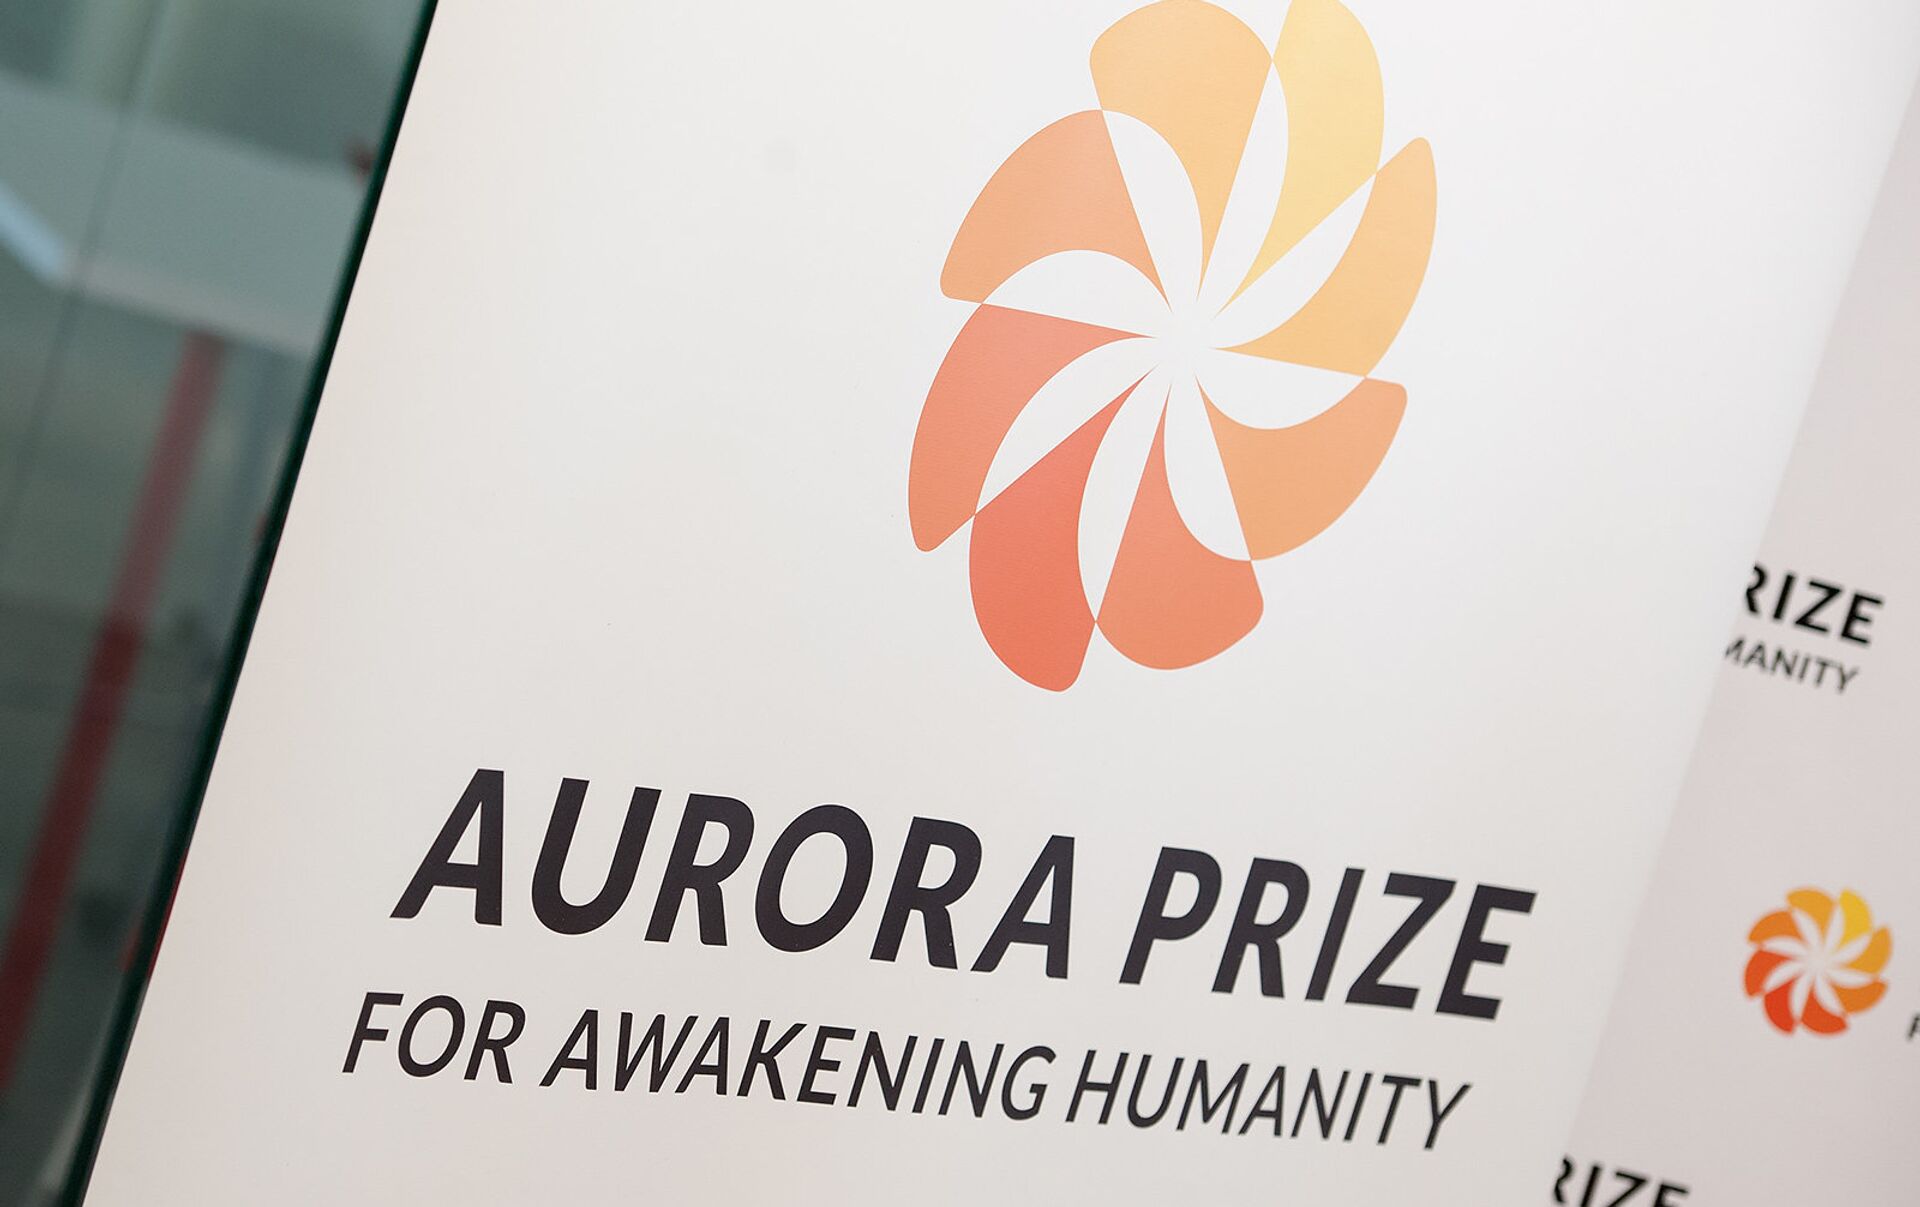 Վենետիկի Սուրբ Ղազար կղզում այսօր տեղի կունենա «Ավրորա» Aurora Prize մրցանակի շնորհման արարողությունը․ Վարդանյան 